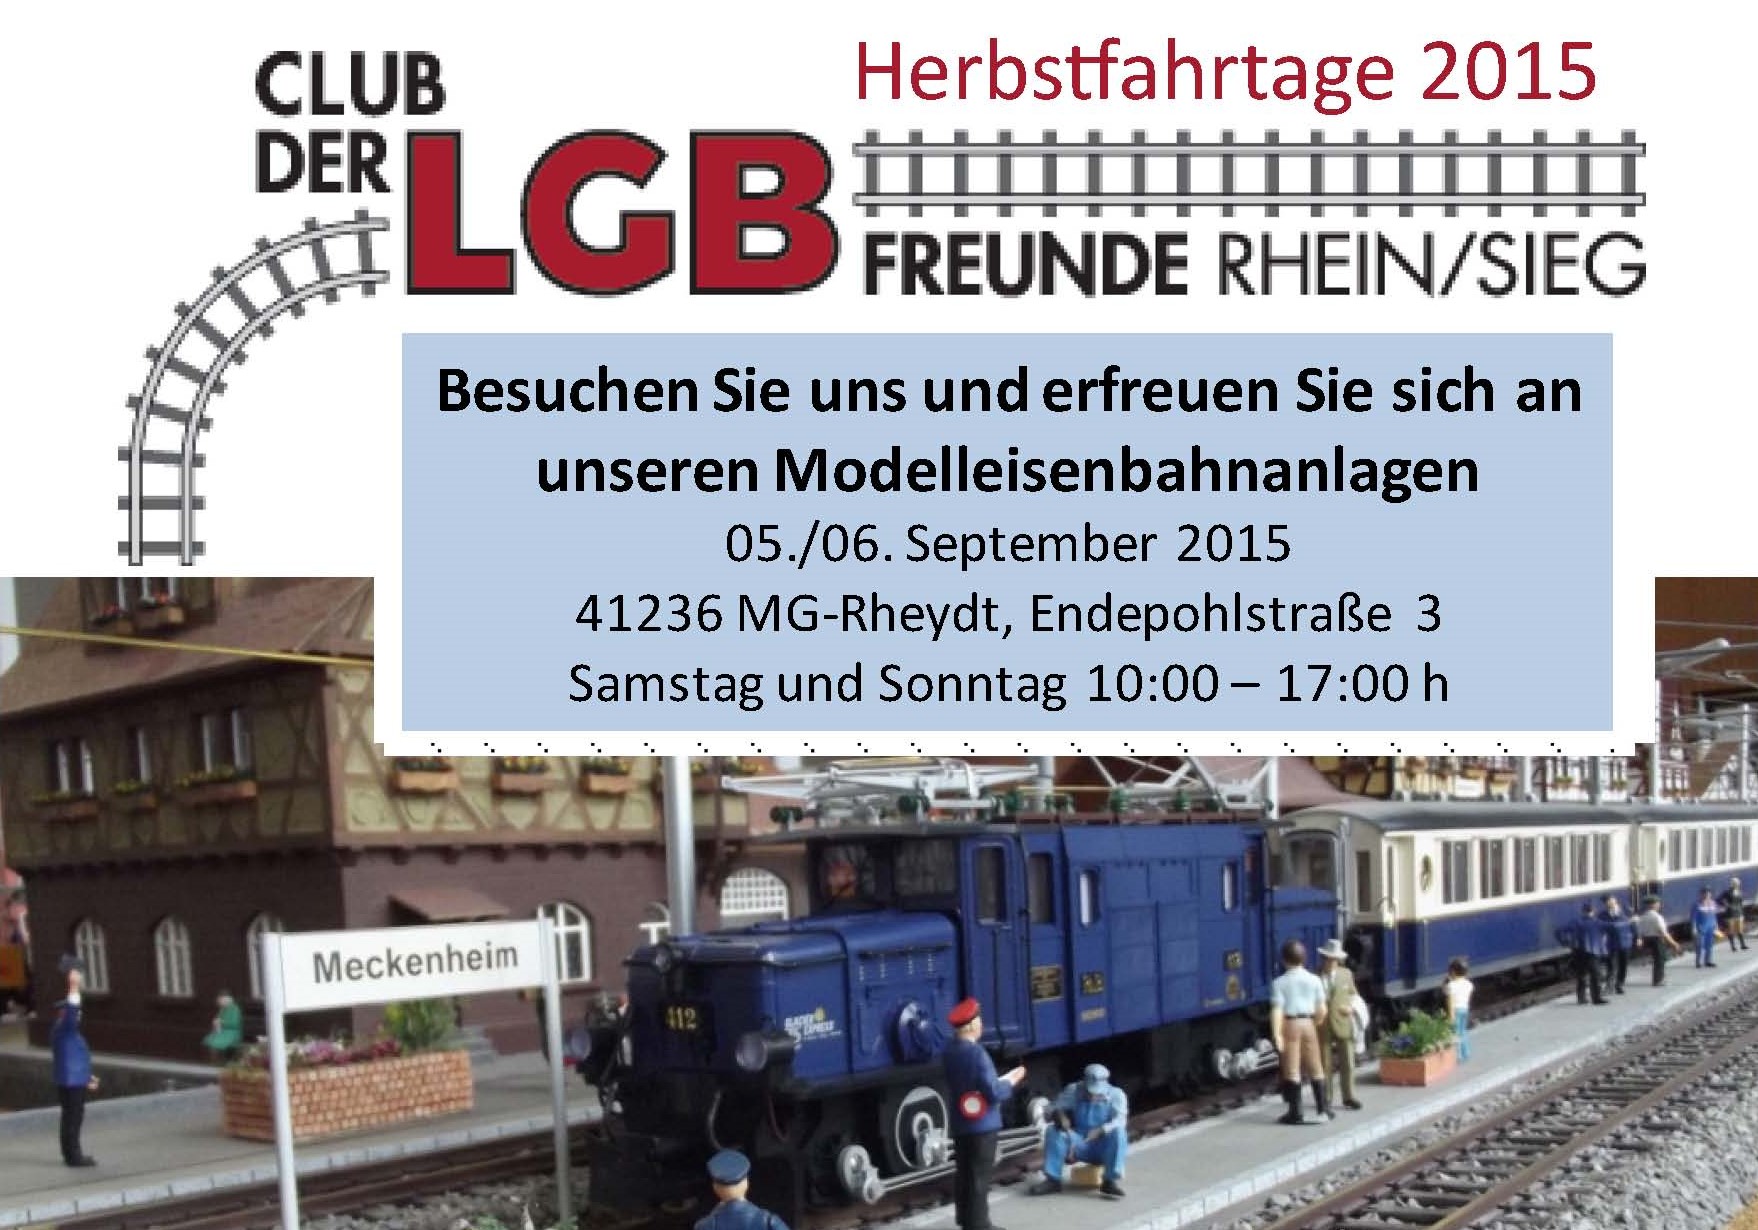 Das waren die Herbstfahrtage unsers Clubs der LGB Freunde Rhein Sieg e.V. am 05. und 06. September 2015